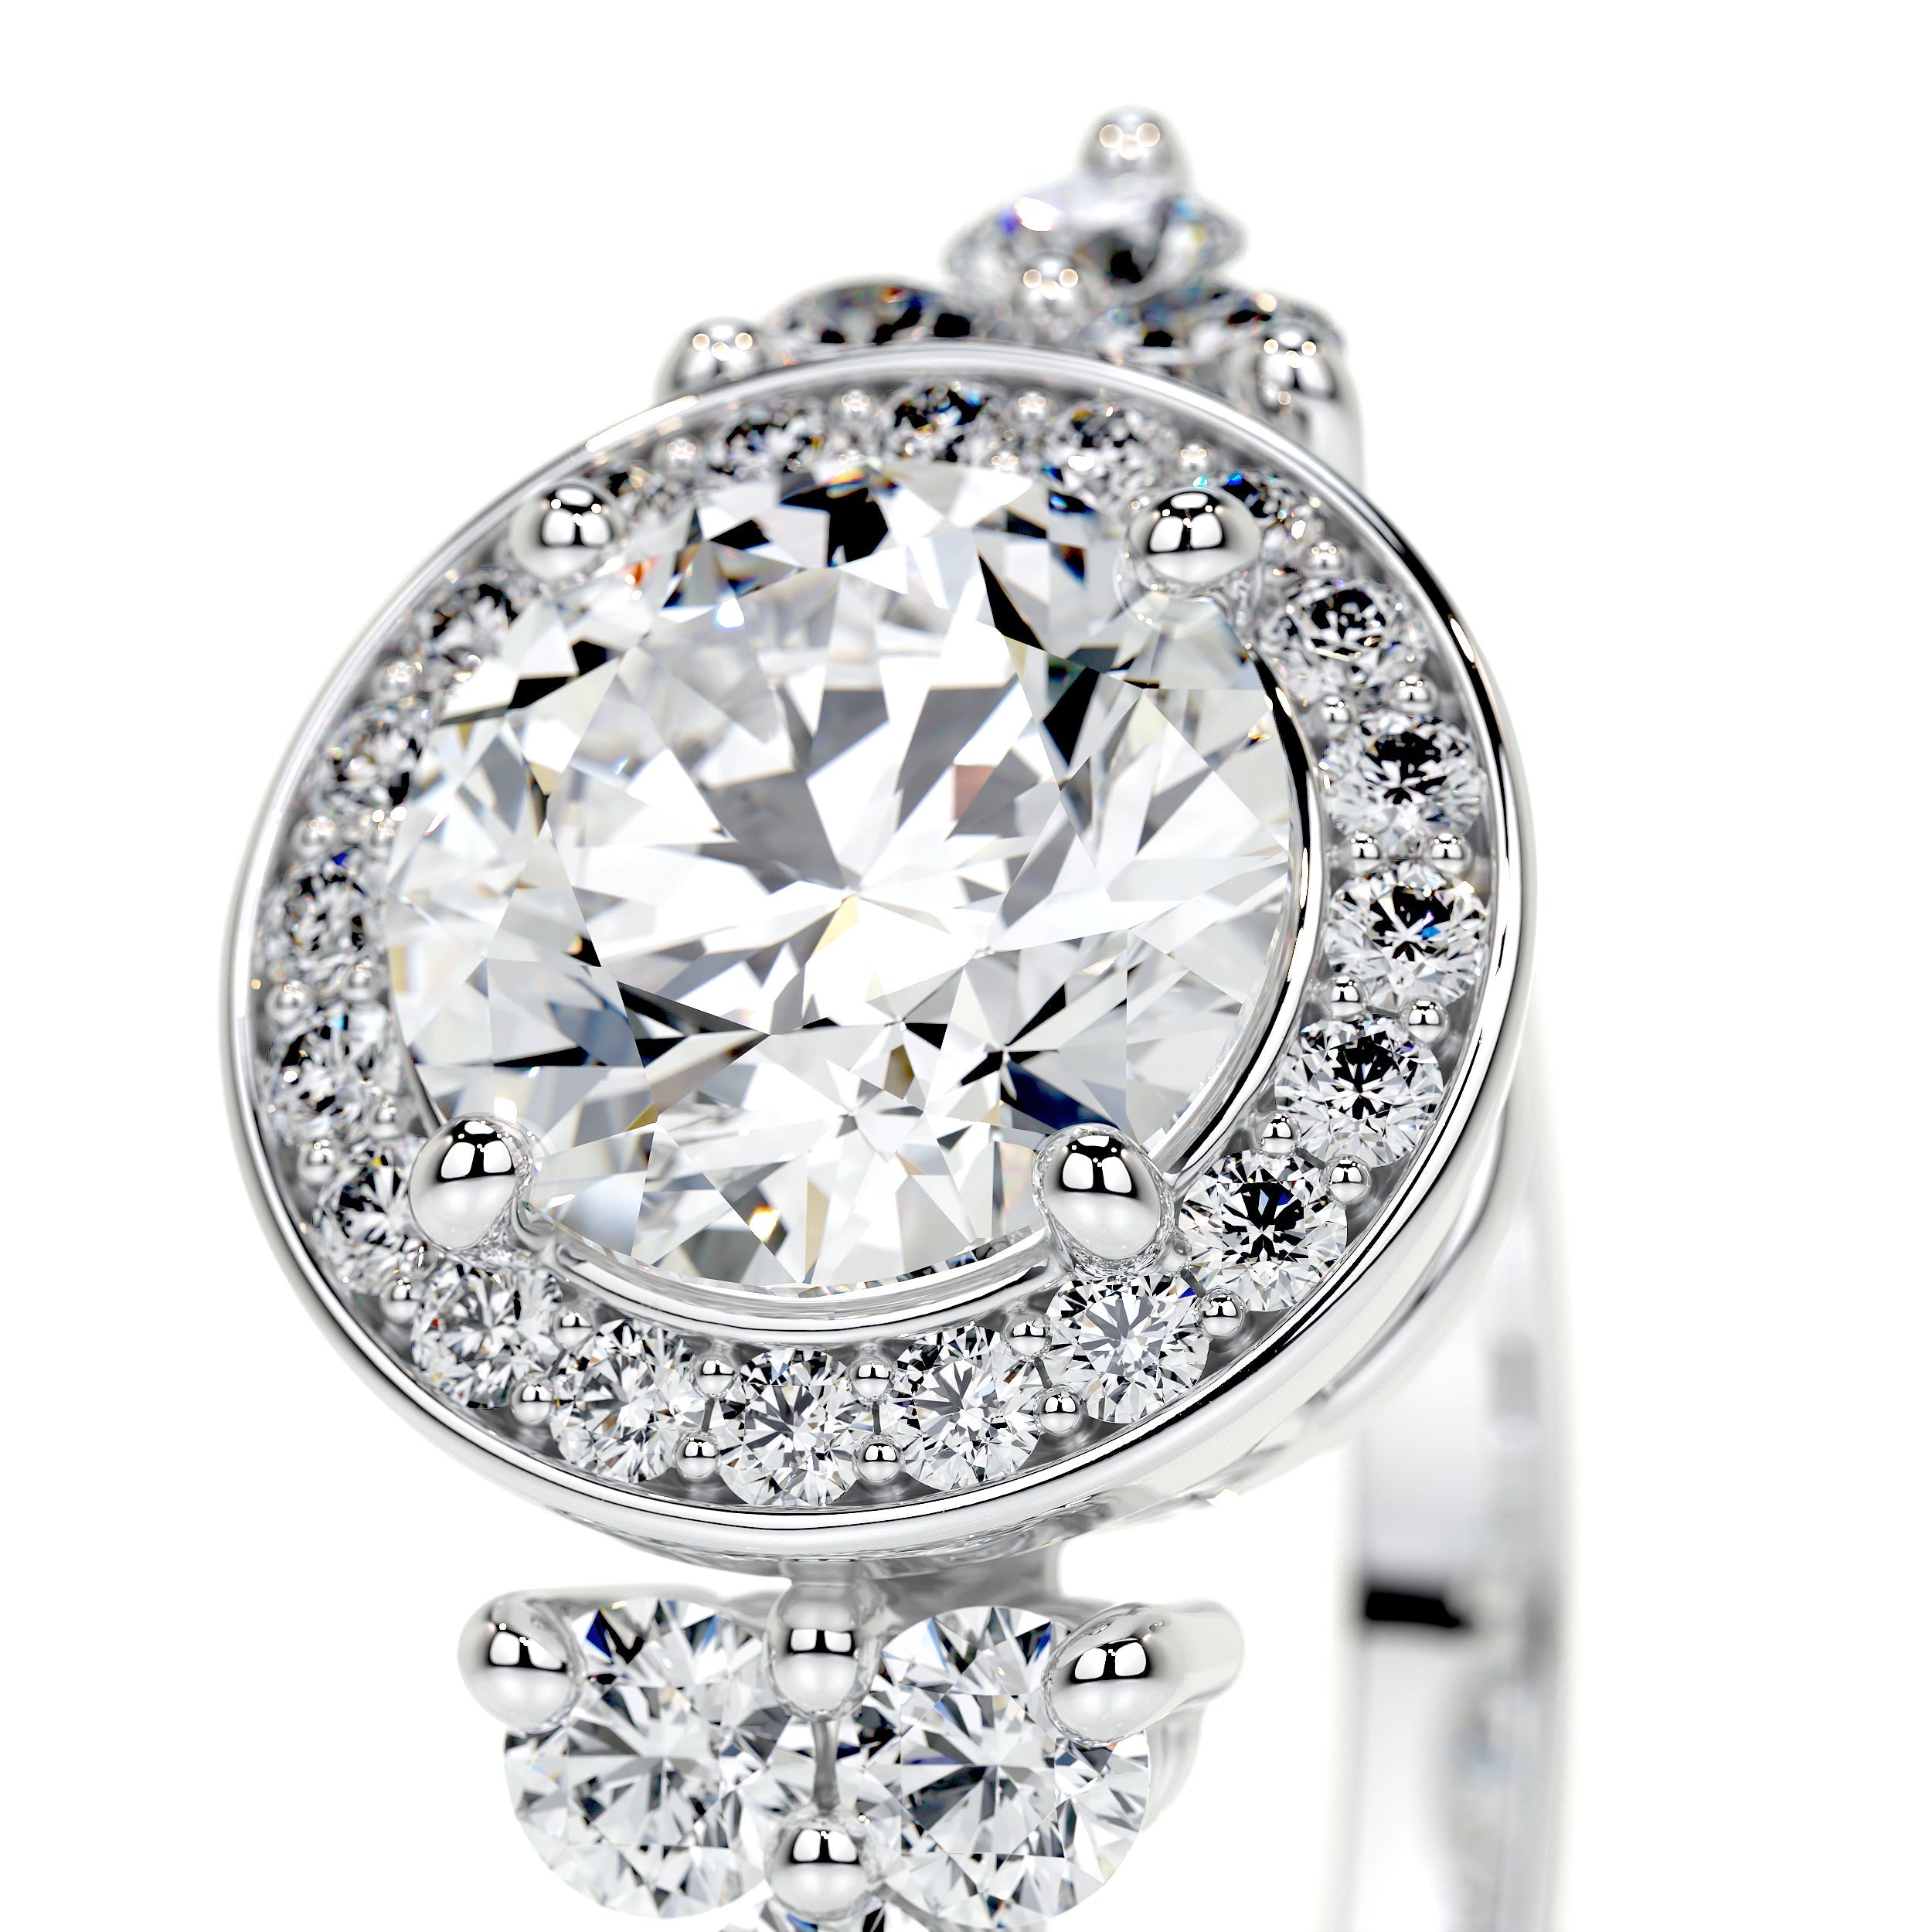 Ivy Vintage Lab Grown Diamond Ring   (2 Carat) -14K White Gold